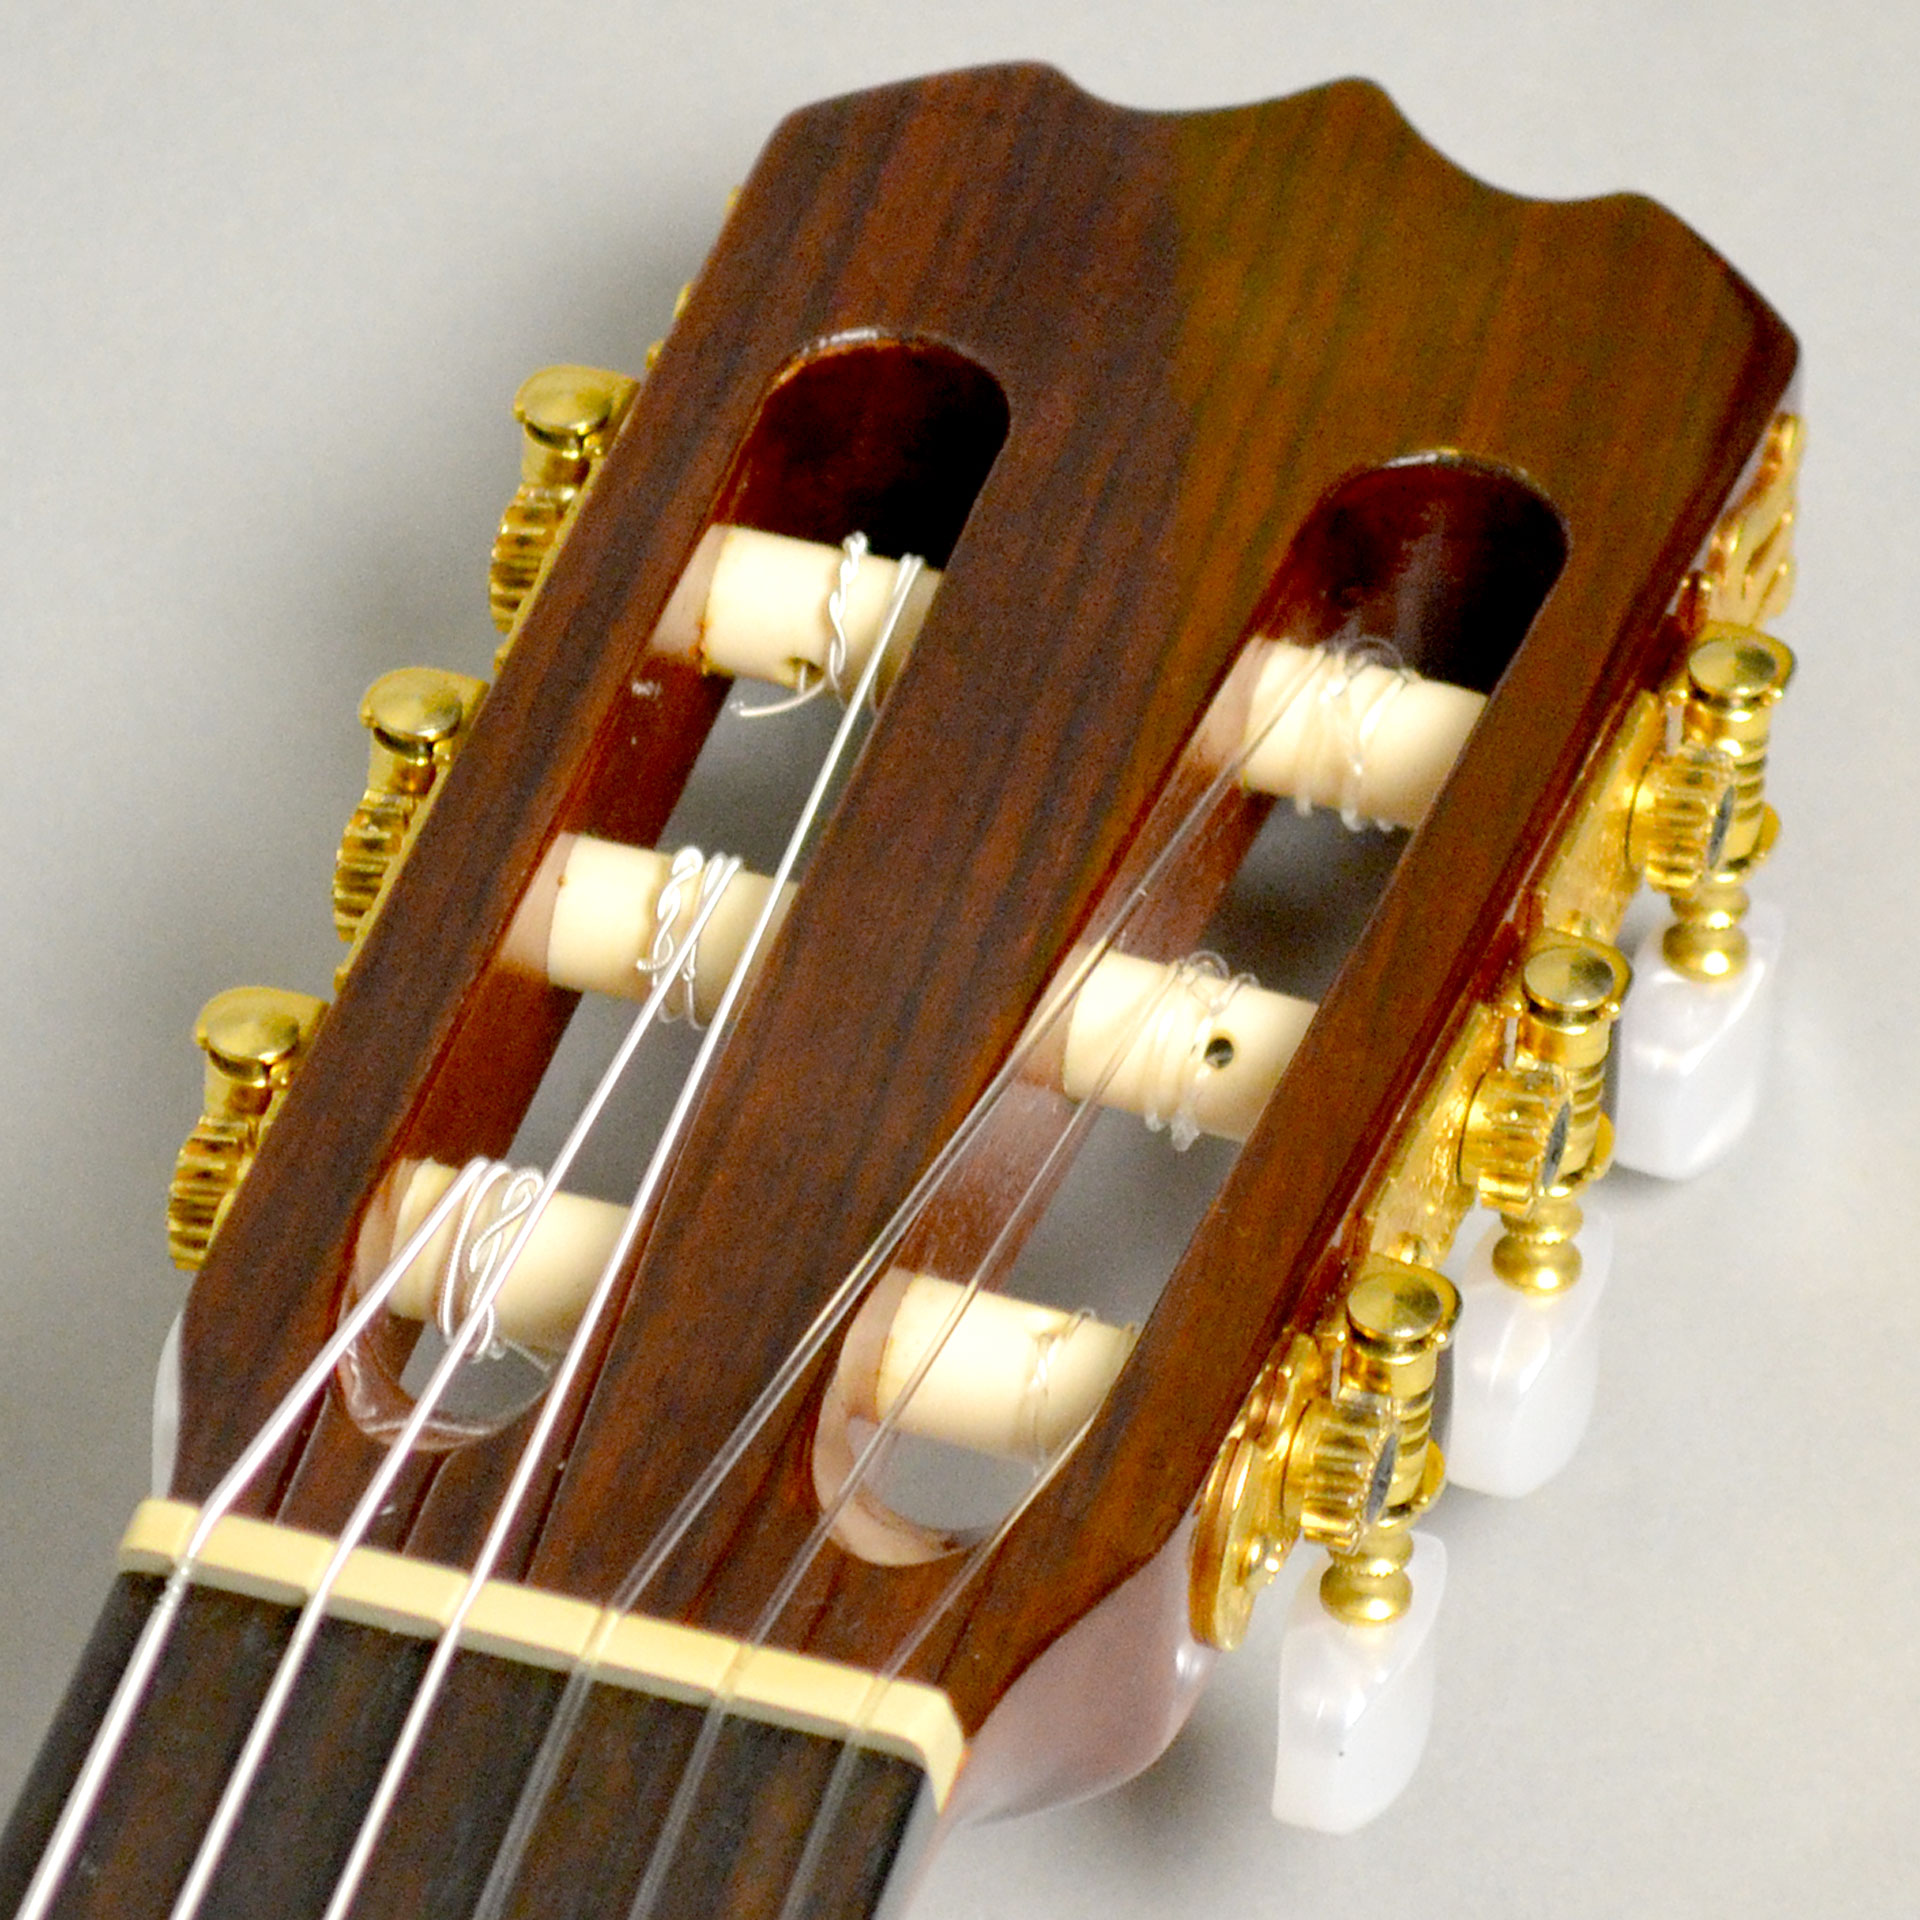 新品本物 【美品】Frontere - FGC-500C FGC-500C クラシックギター 美 